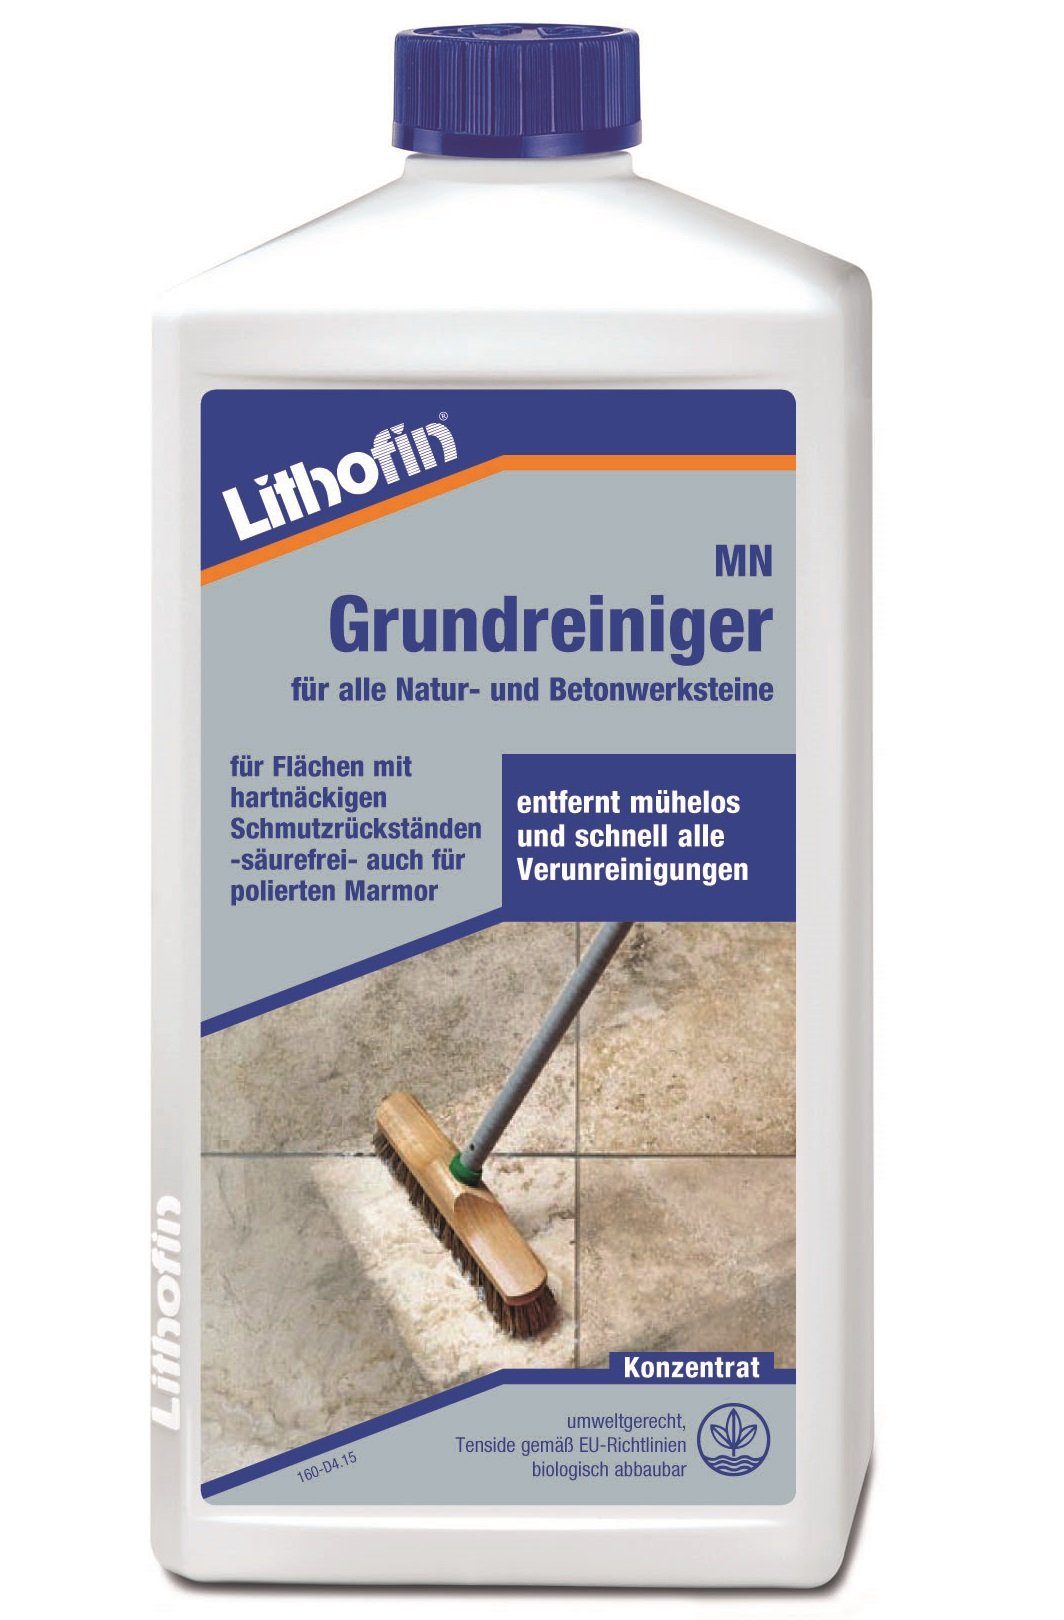 Lithofin LITHOFIN MN Grundreiniger Konzentrat für Bodenbeläge, Marmor und Kalks Naturstein-Reiniger | Steinreiniger